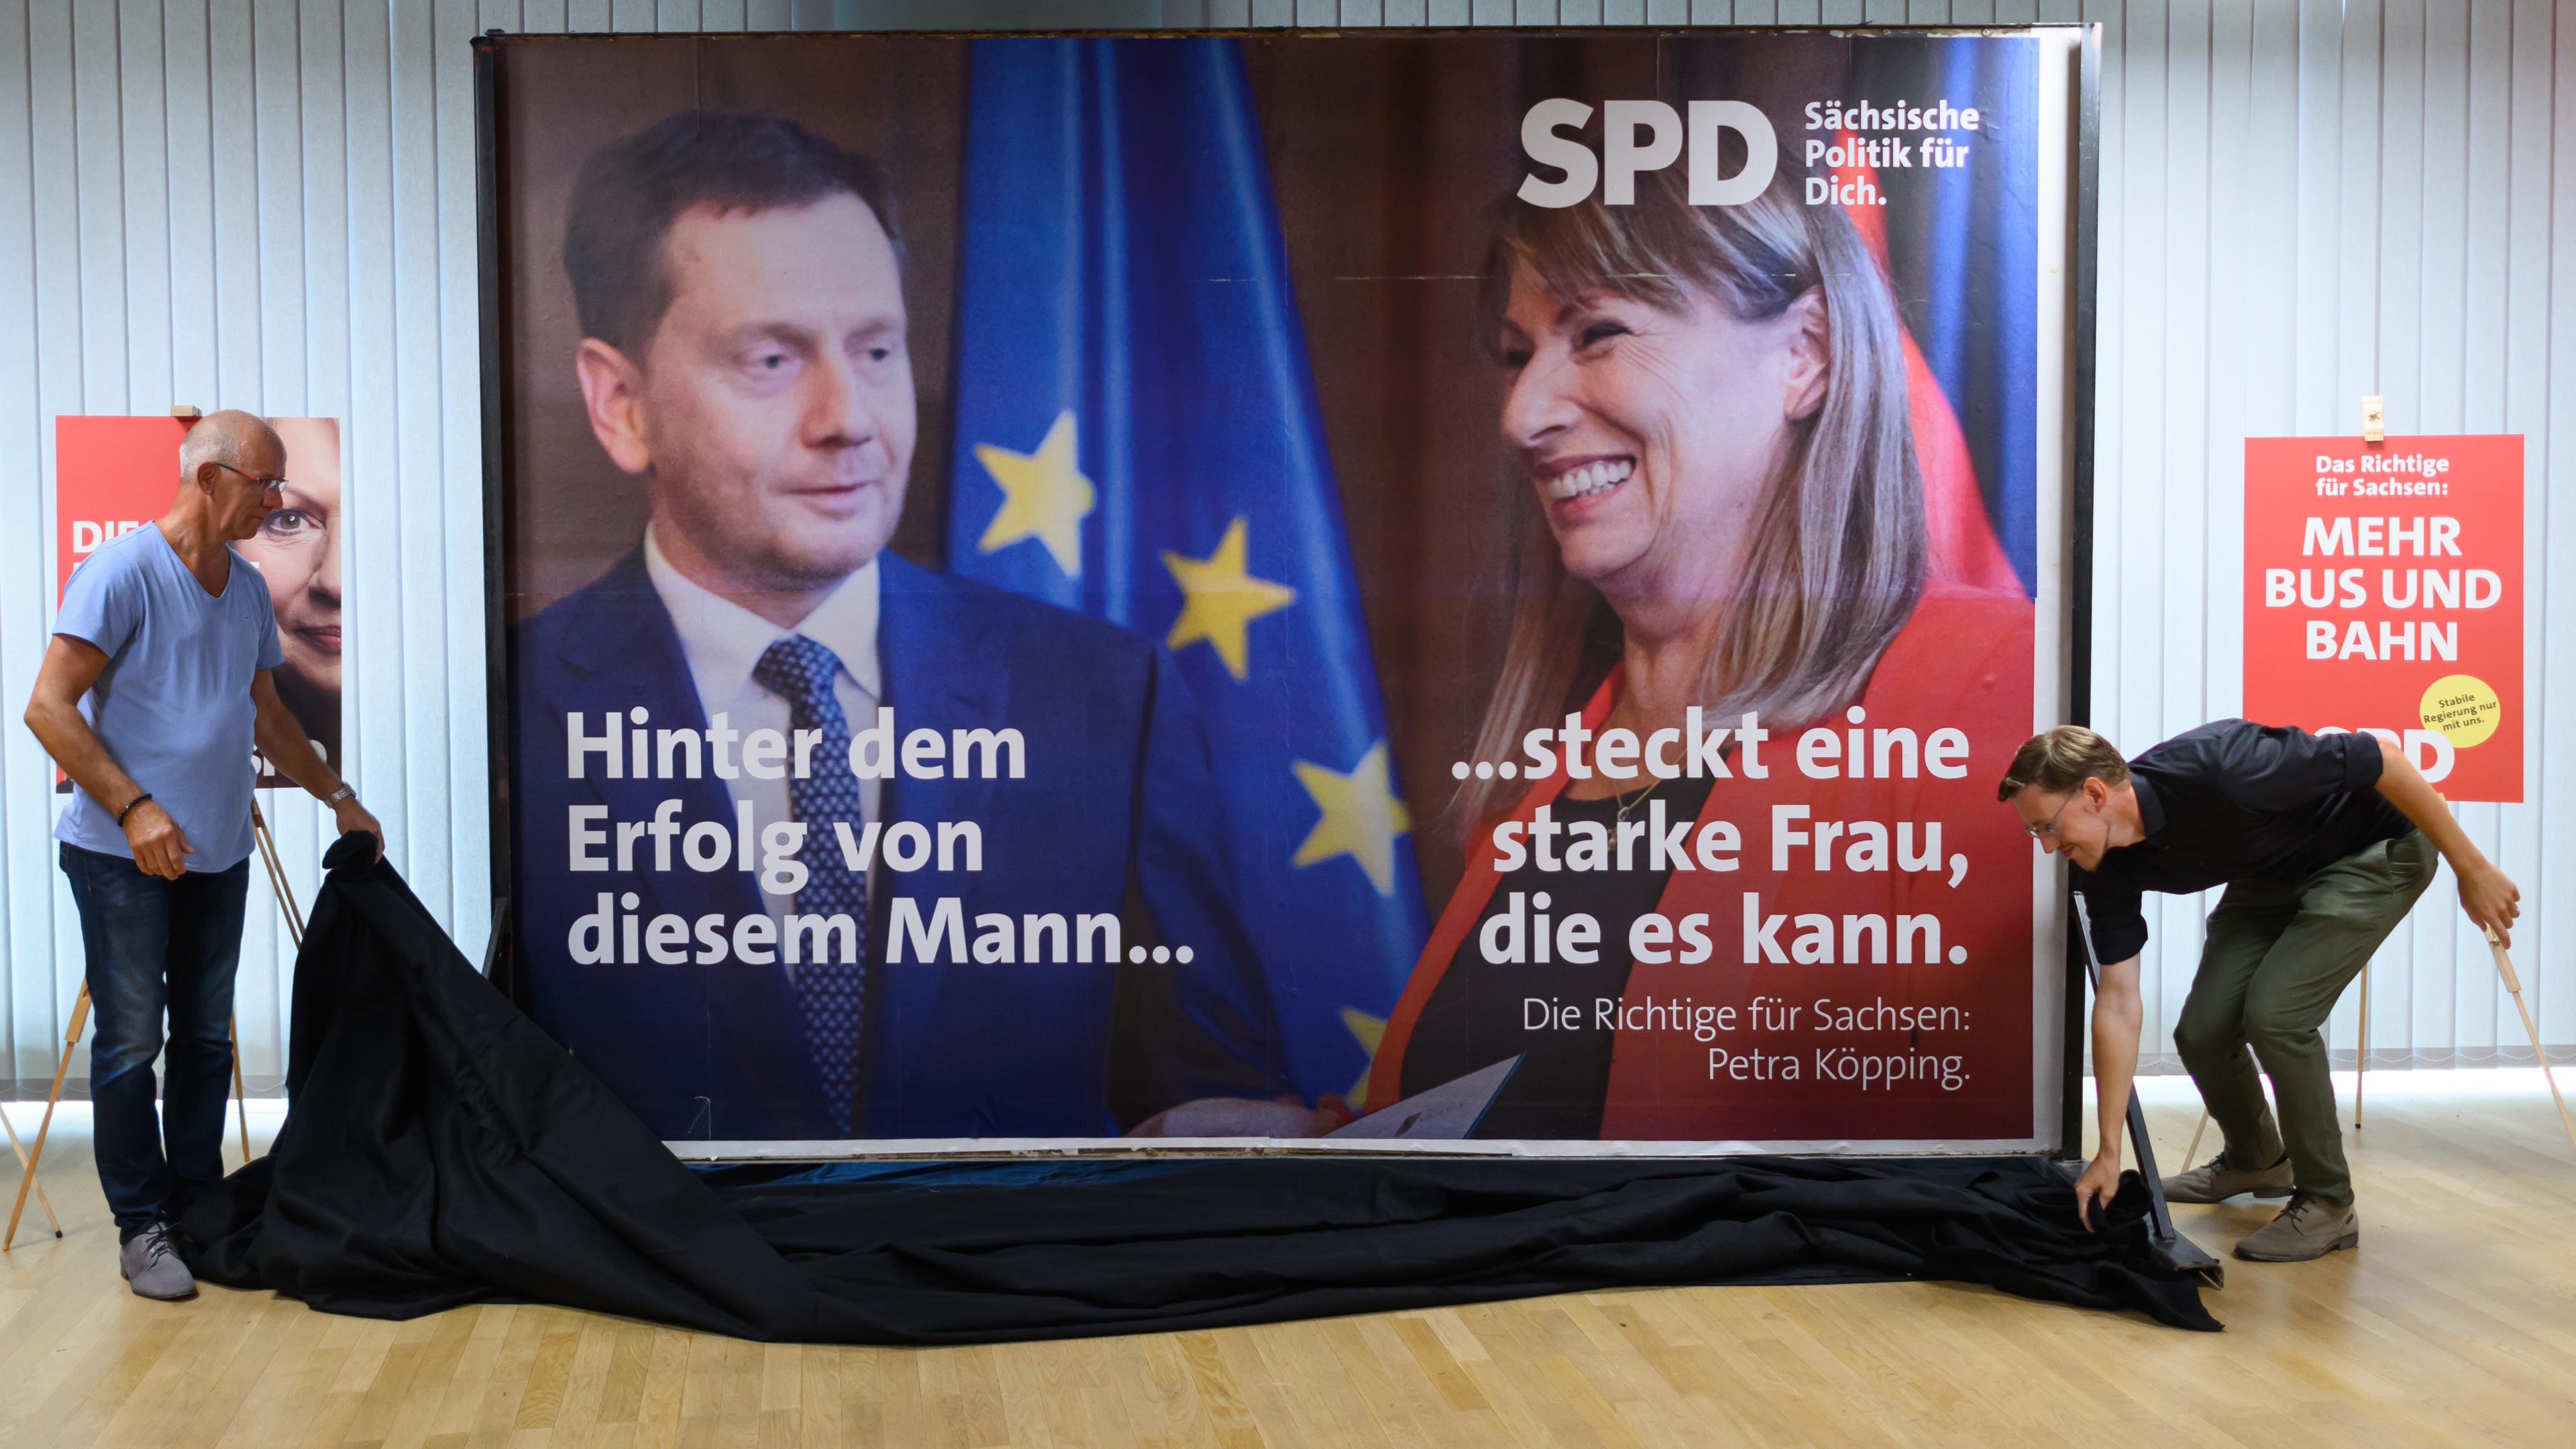 Mitarbeiter der SPD präsentieren bei Vorstellung der Kampagne für die Landtagswahl in Sachsen im Herbert-Wehner-Haus ein Plakat, das Michael Kretschmer (CDU, l), Ministerpräsident von Sachsen, und Petra Köpping (SPD), Sozialministerin von Sachsen und Spitzenkandidatin für die Landtagswahl, zeigt.